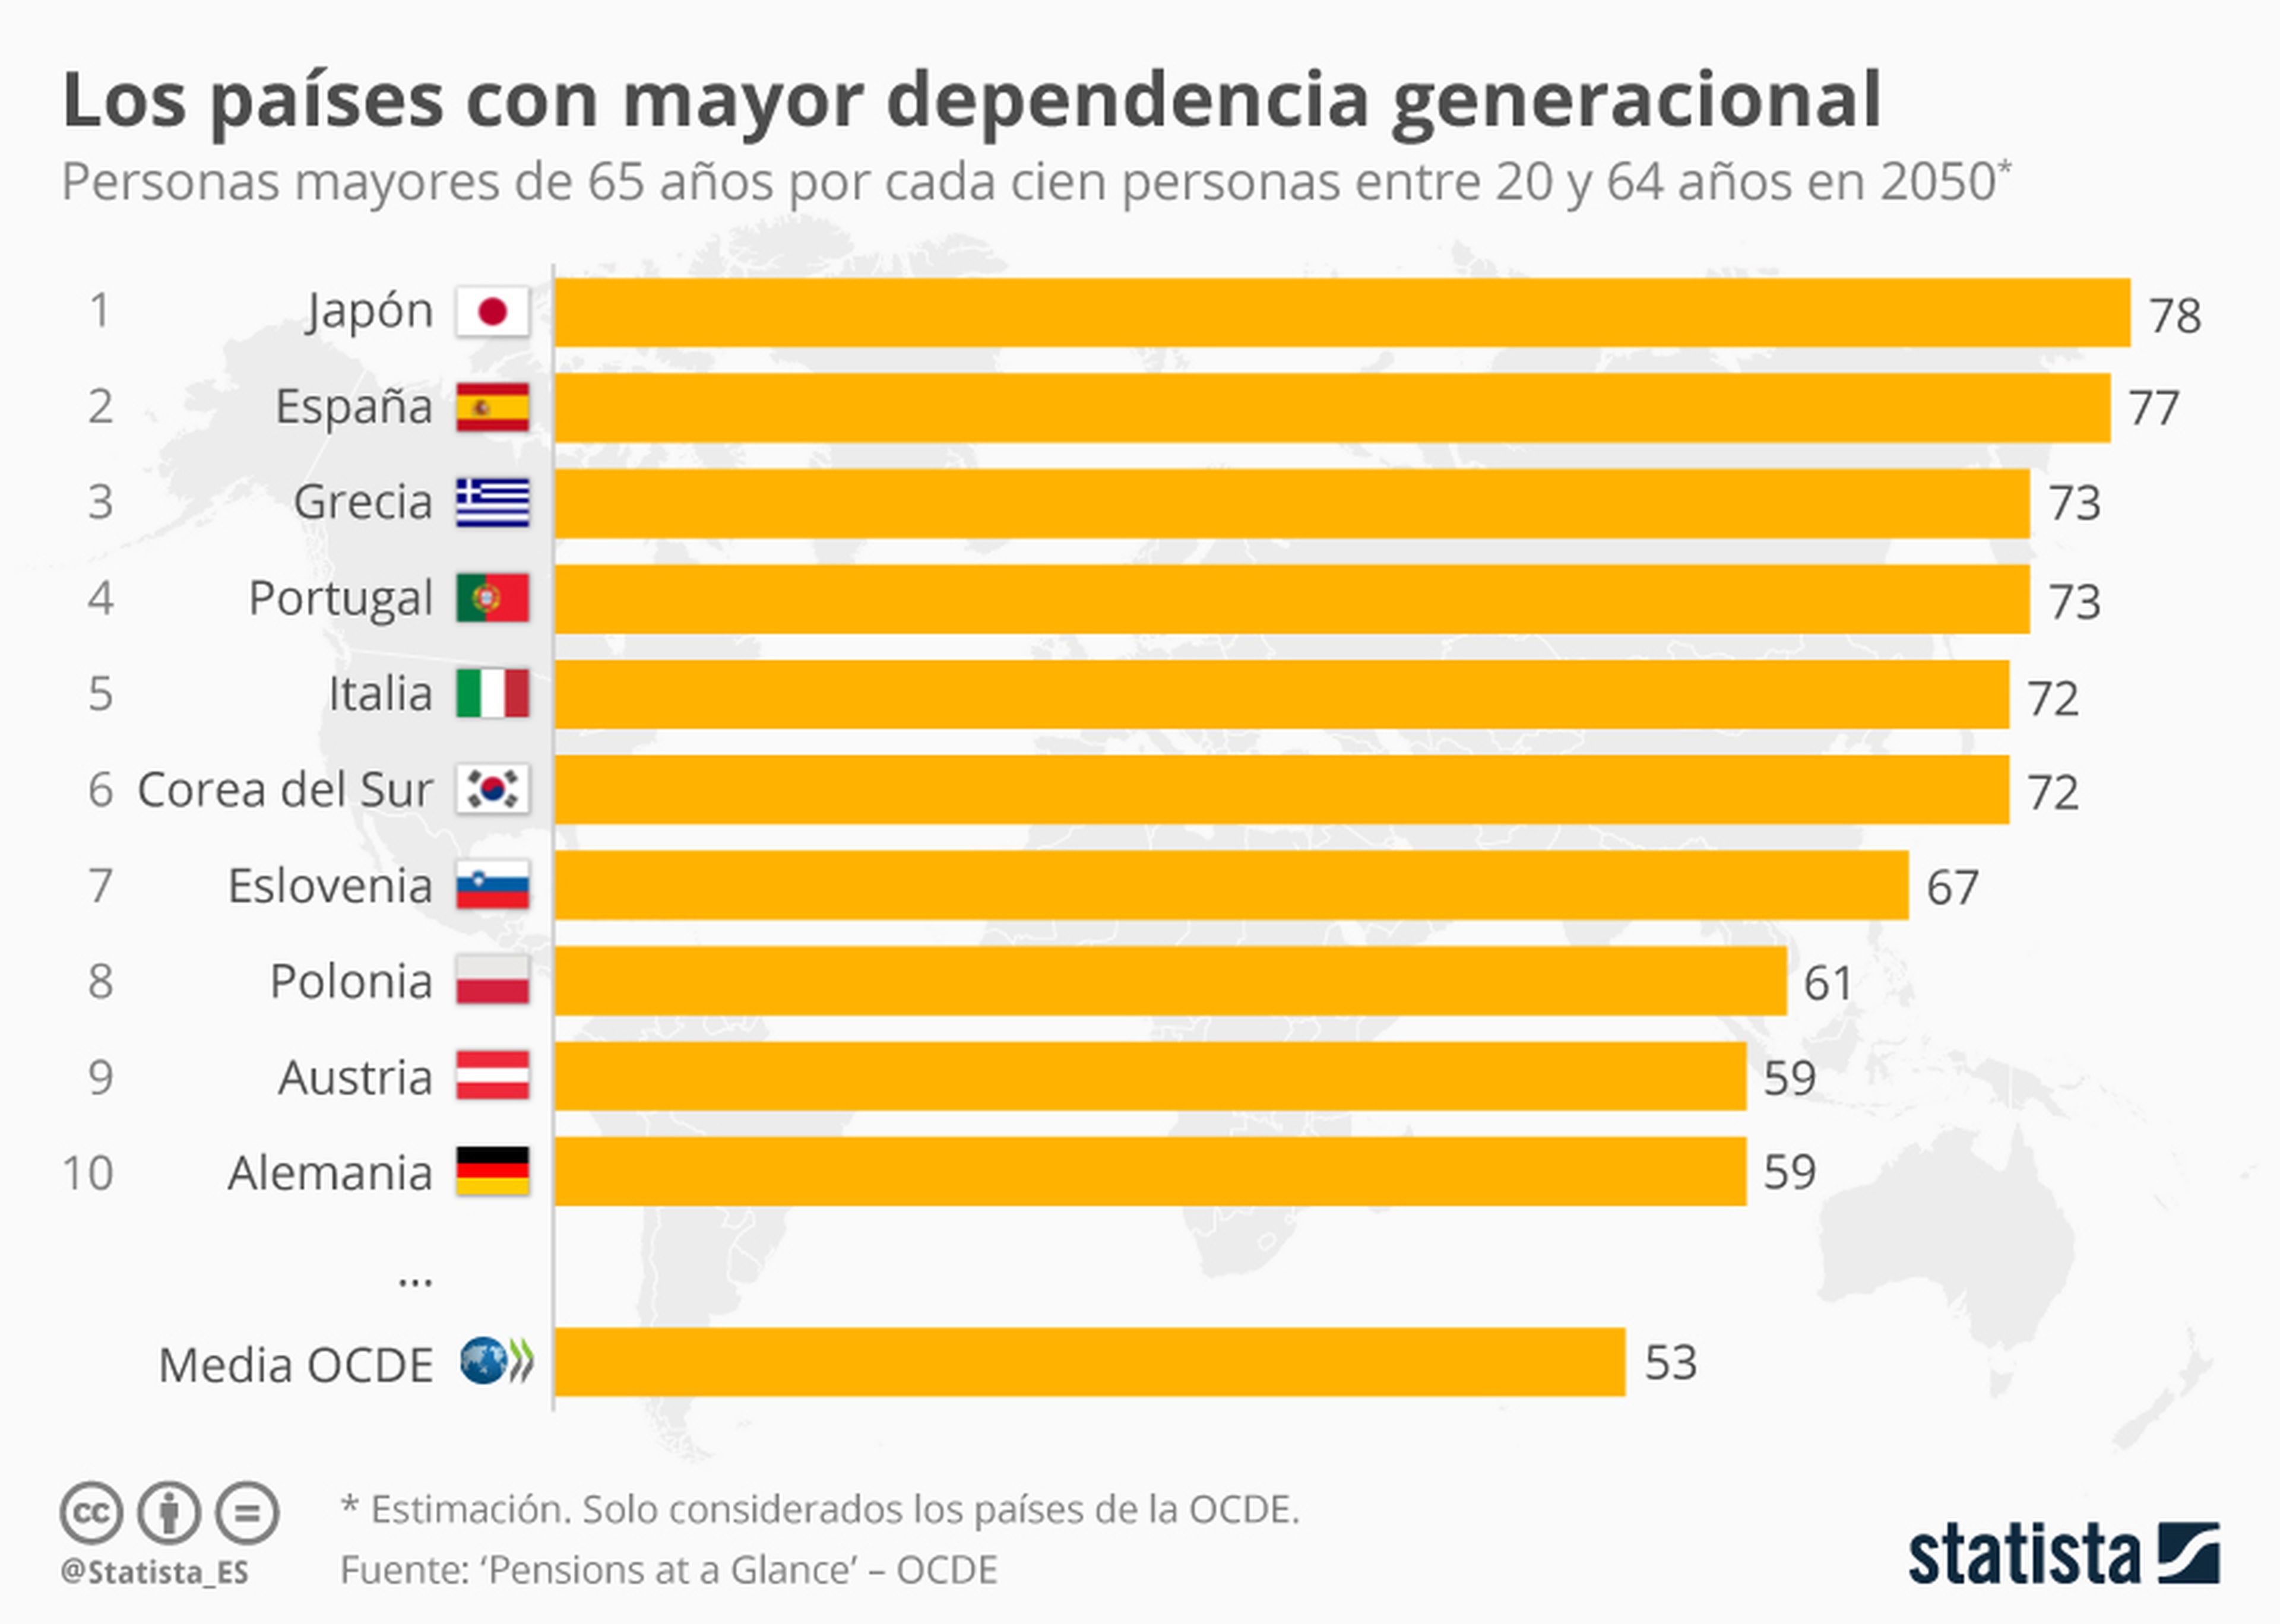 Dependencia generacional según datos de la OCDE.